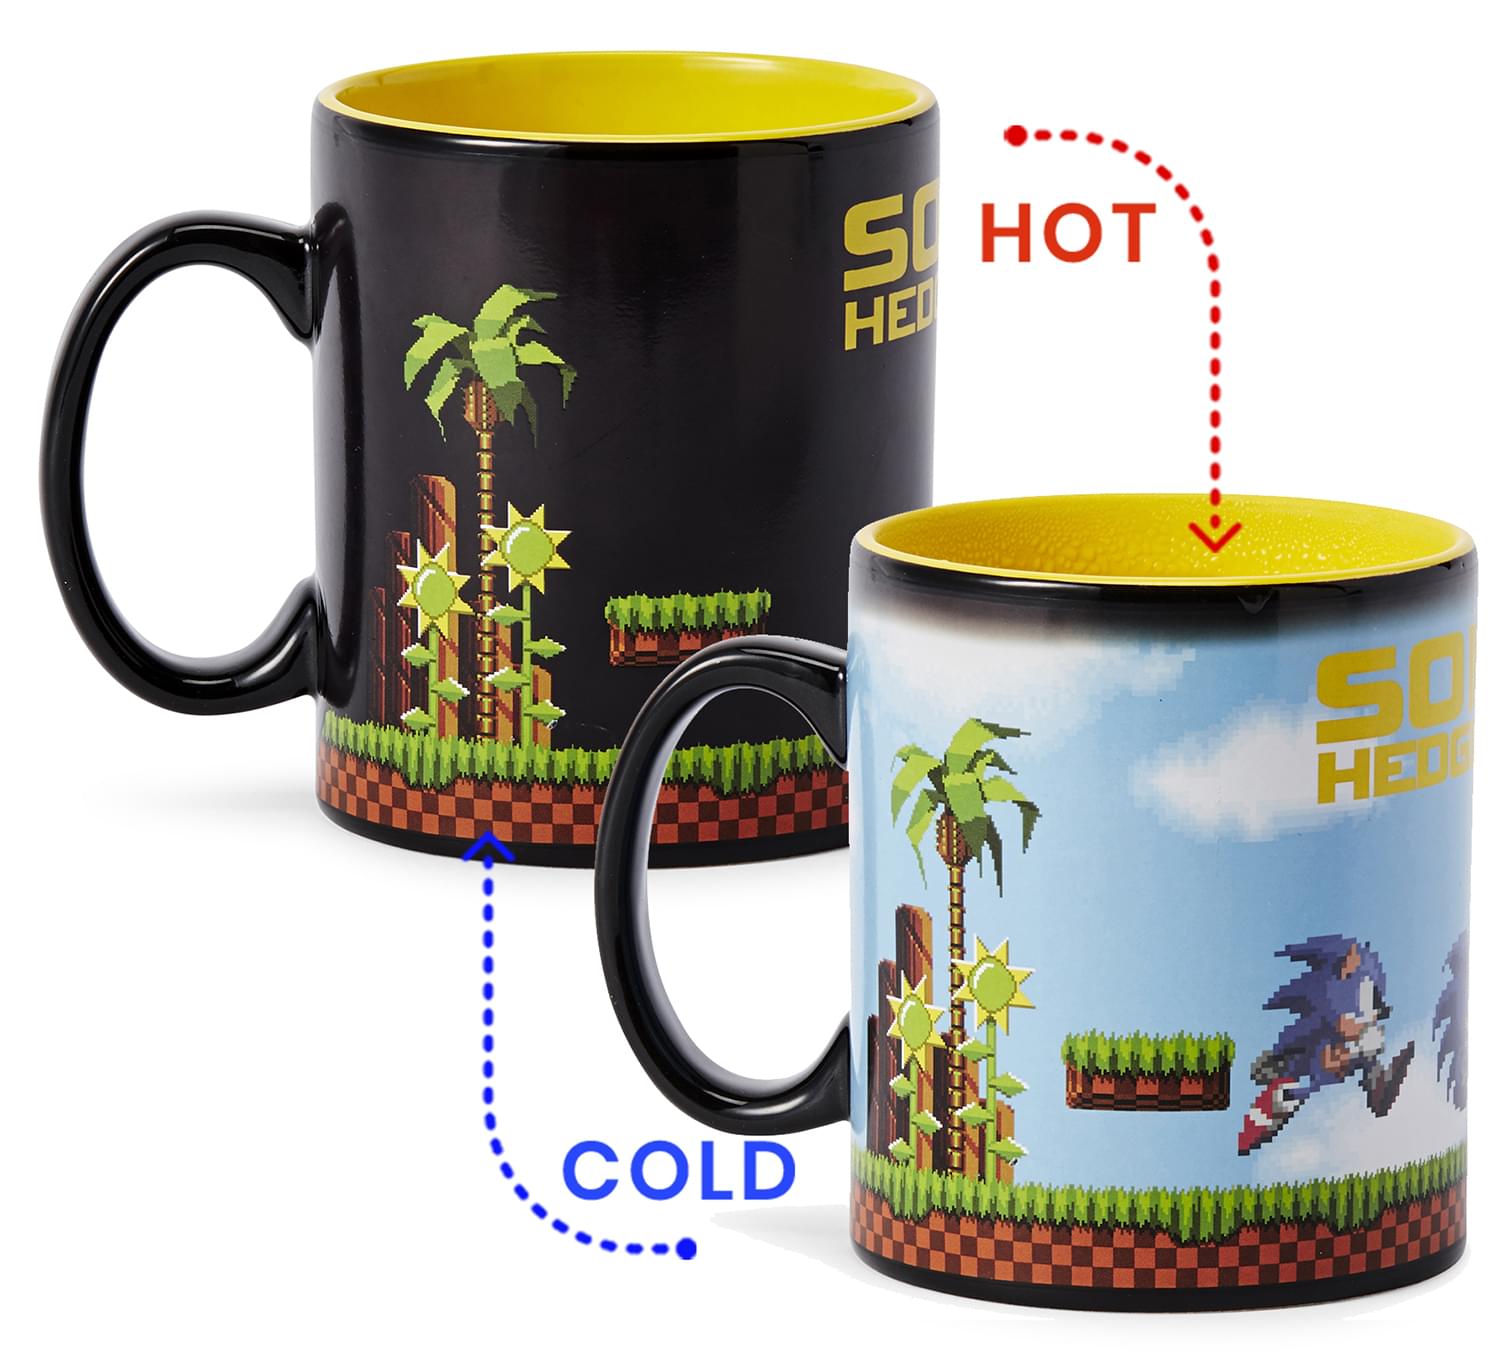 Sonic the Hedgehog Coffee Mug with free Sonic enamel pin)